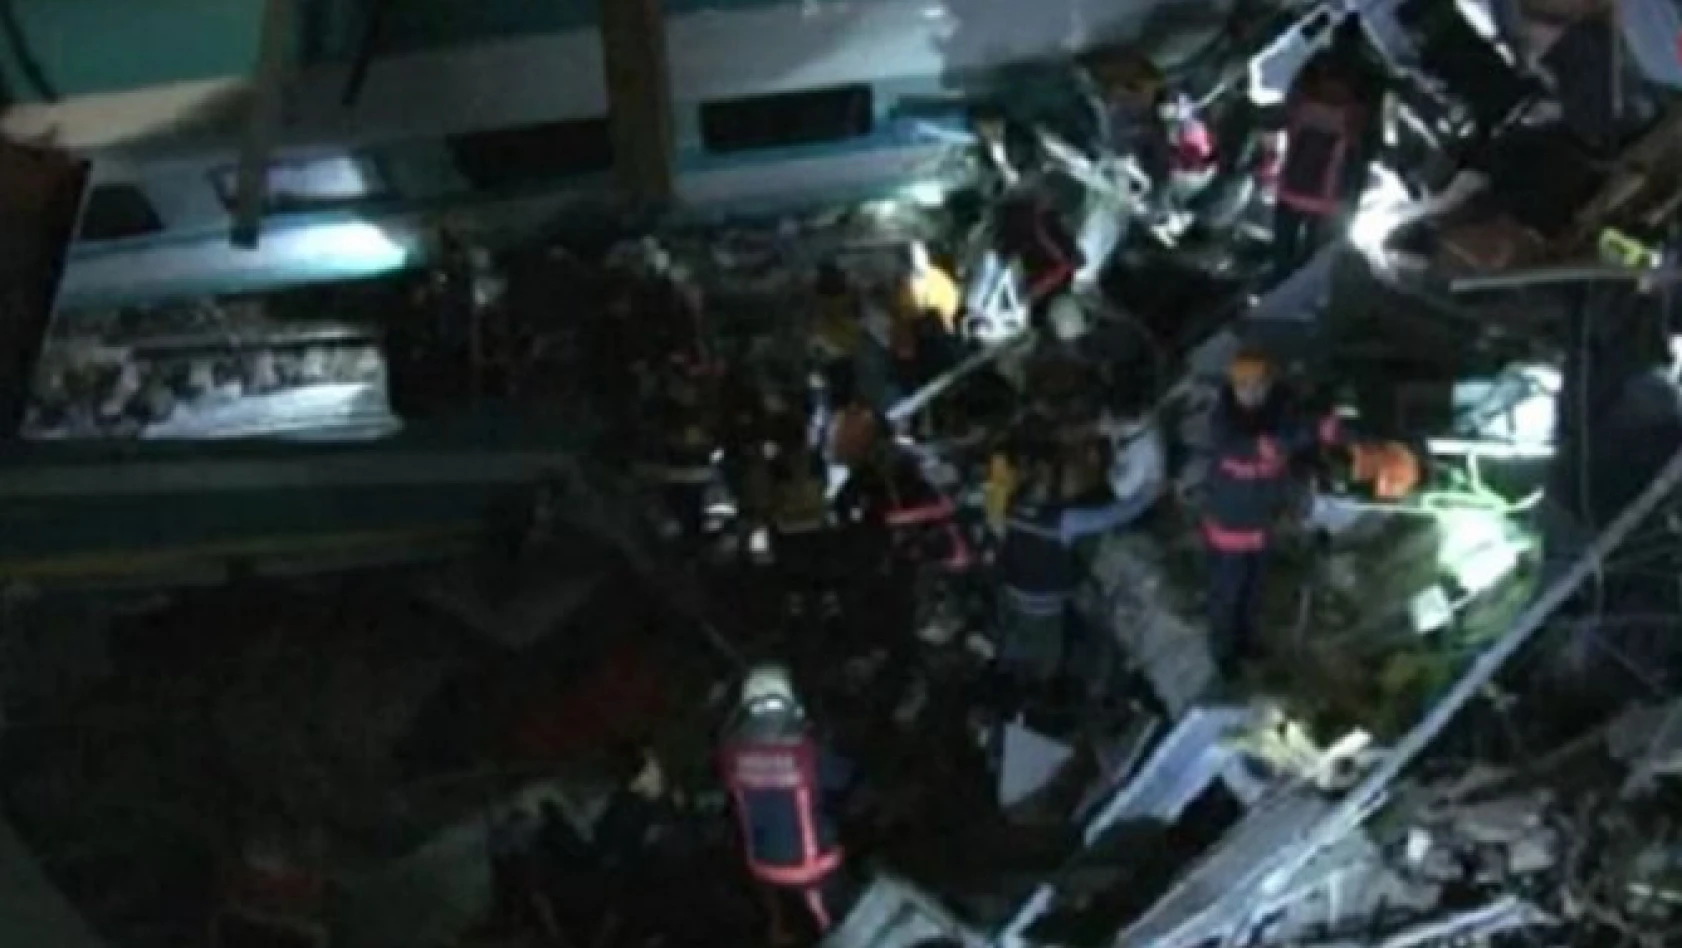 Yüksek hızlı tren kazası: 4 ölü, 43 yaralı!